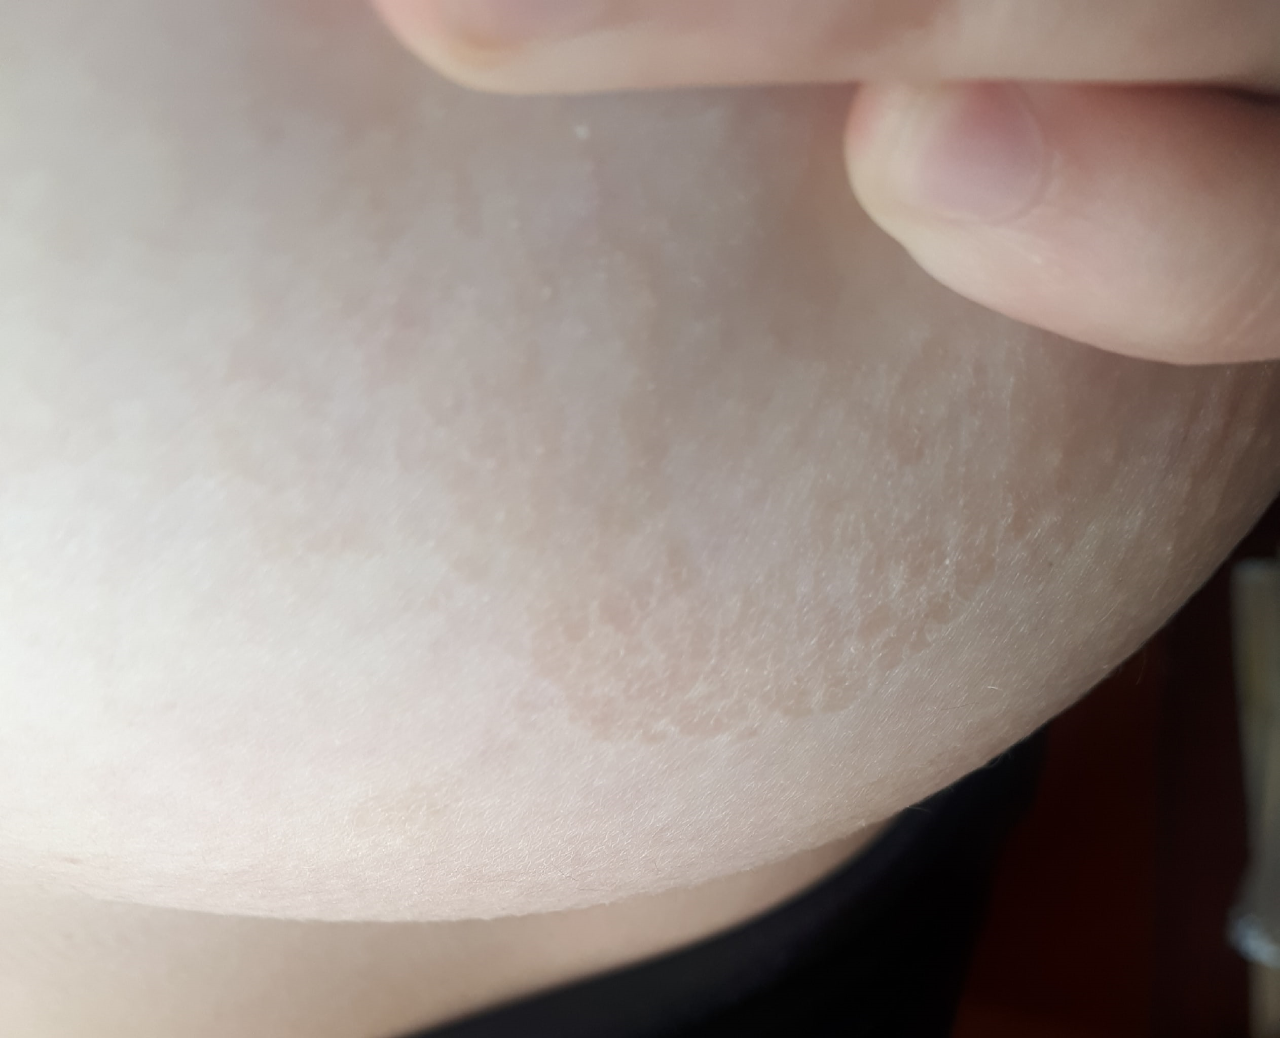 шелушение груди у женщин (120) фото